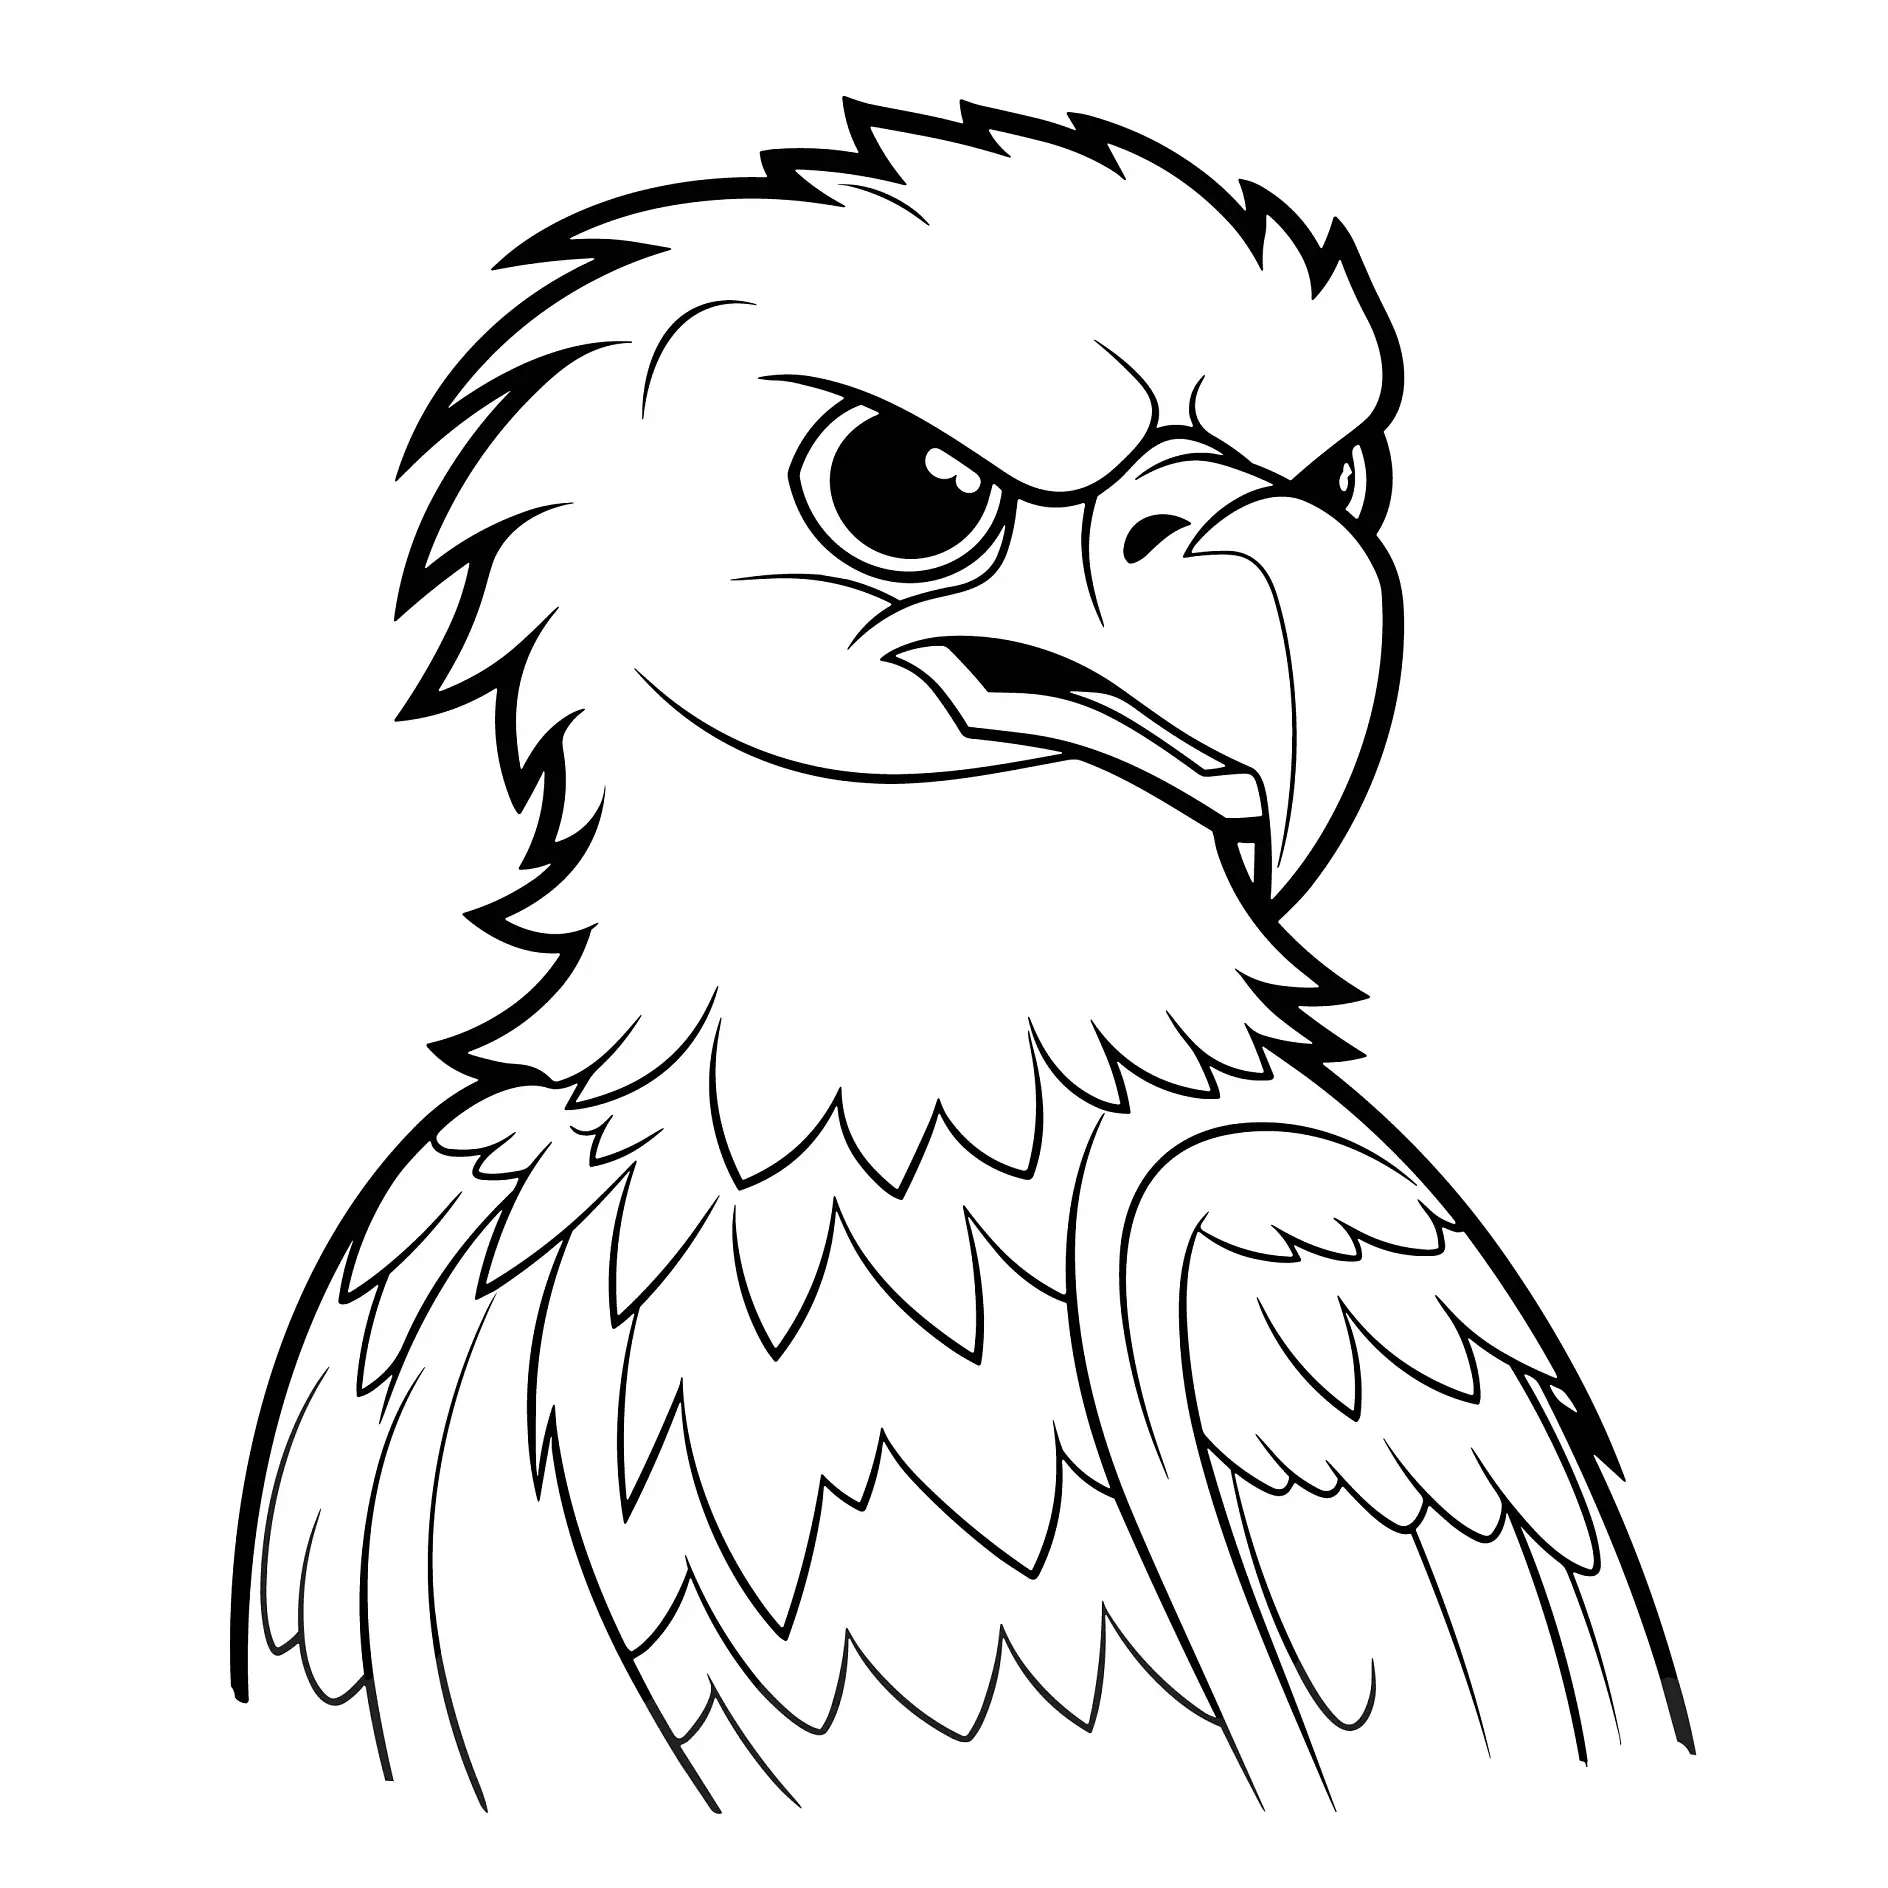 Ausmalbild Adlerkopf mit scharfem Blick und detaillierten Federn